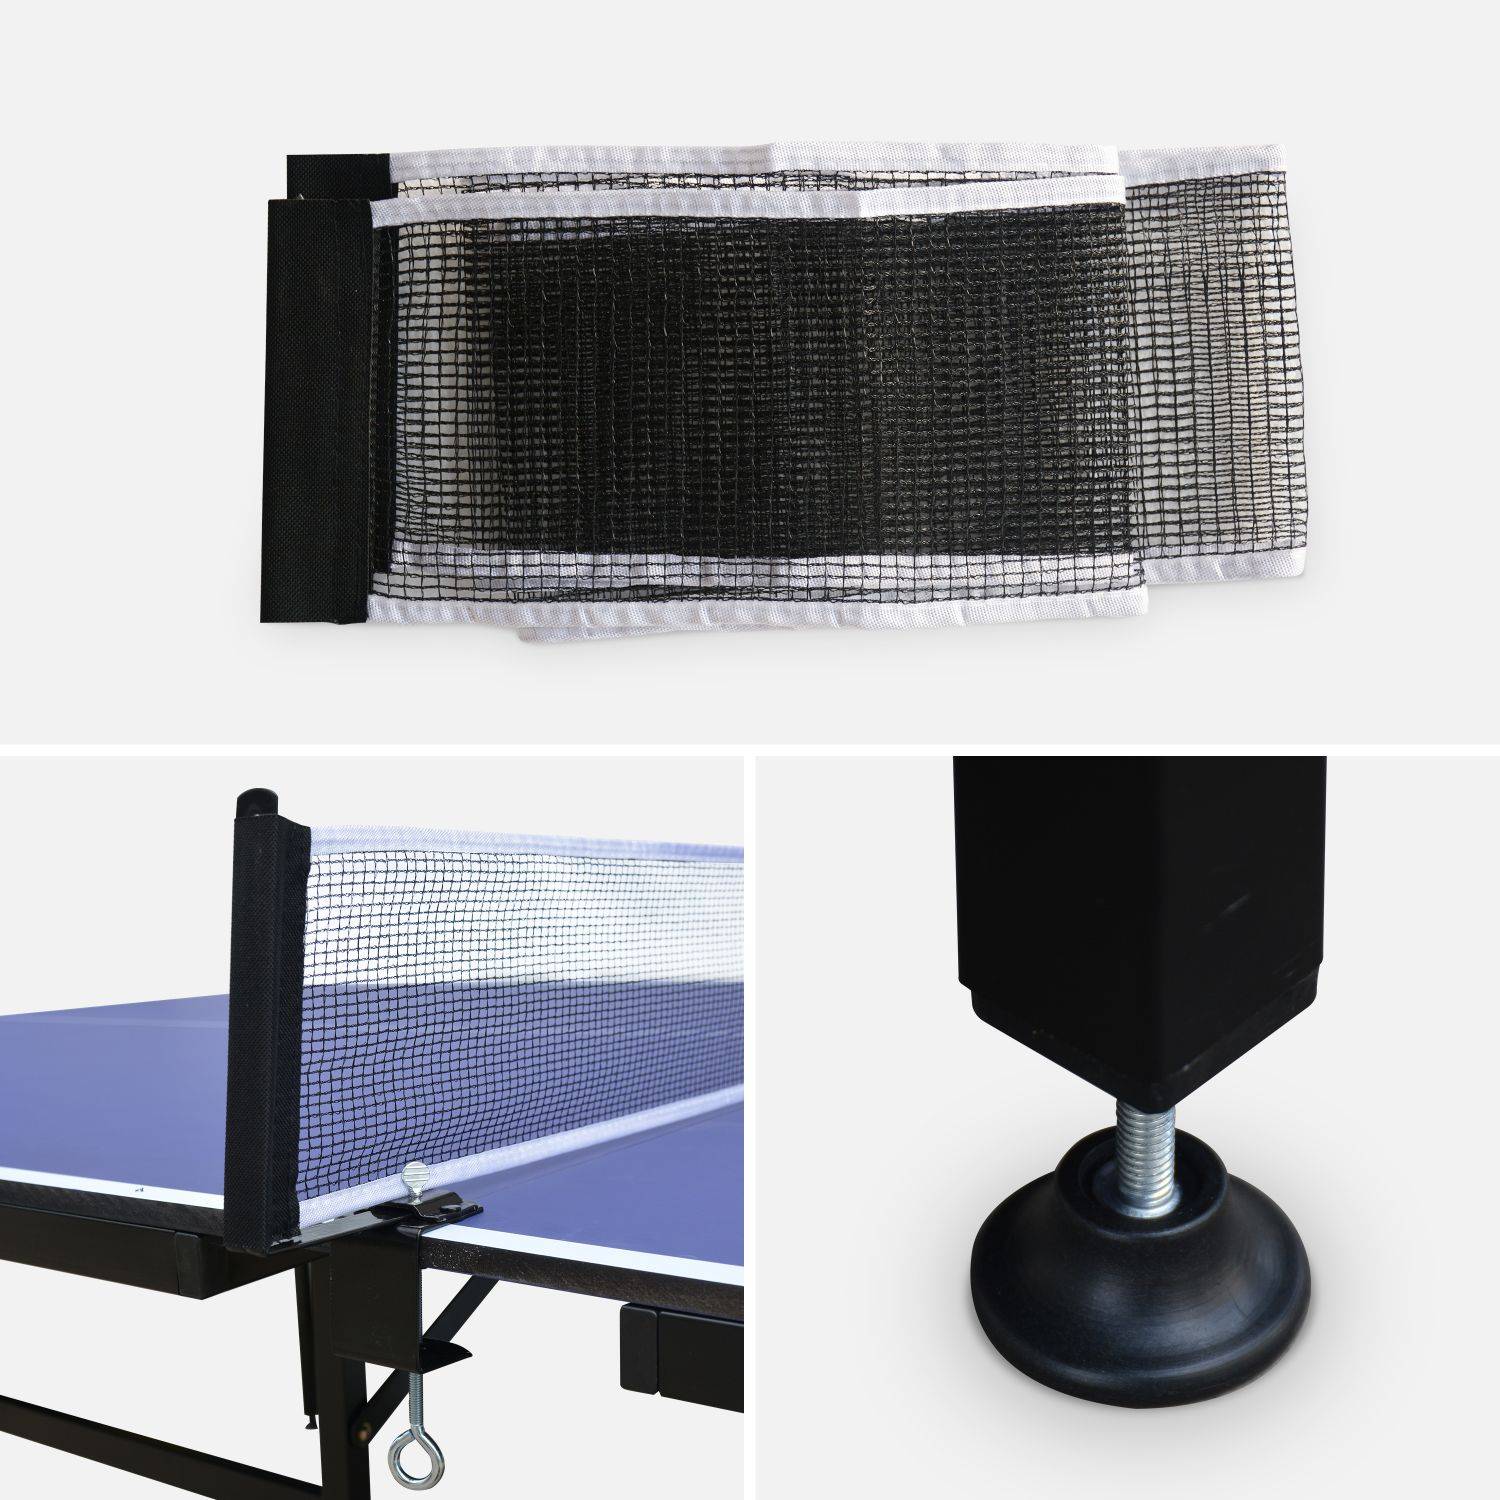 Table de ping pong INDOOR bleue Nagano- table avec 2 raquettes et 4 balles, pour utilisation intérieure, sport tennis de table Photo3